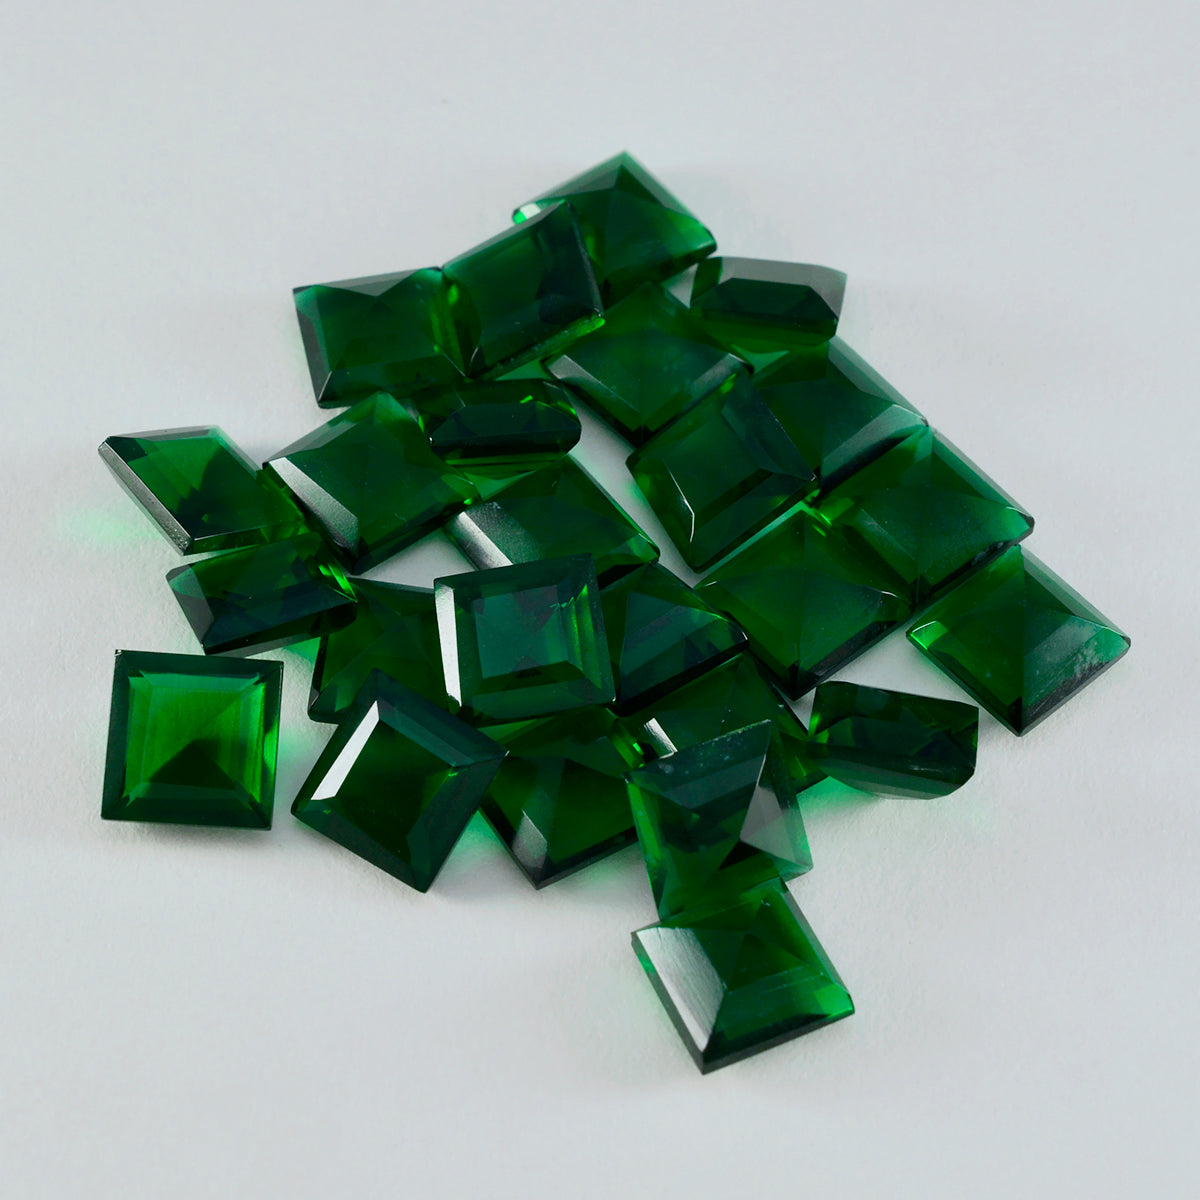 riyogems 1 шт. зеленый изумруд cz ограненный 9x9 мм квадратной формы камень удивительного качества